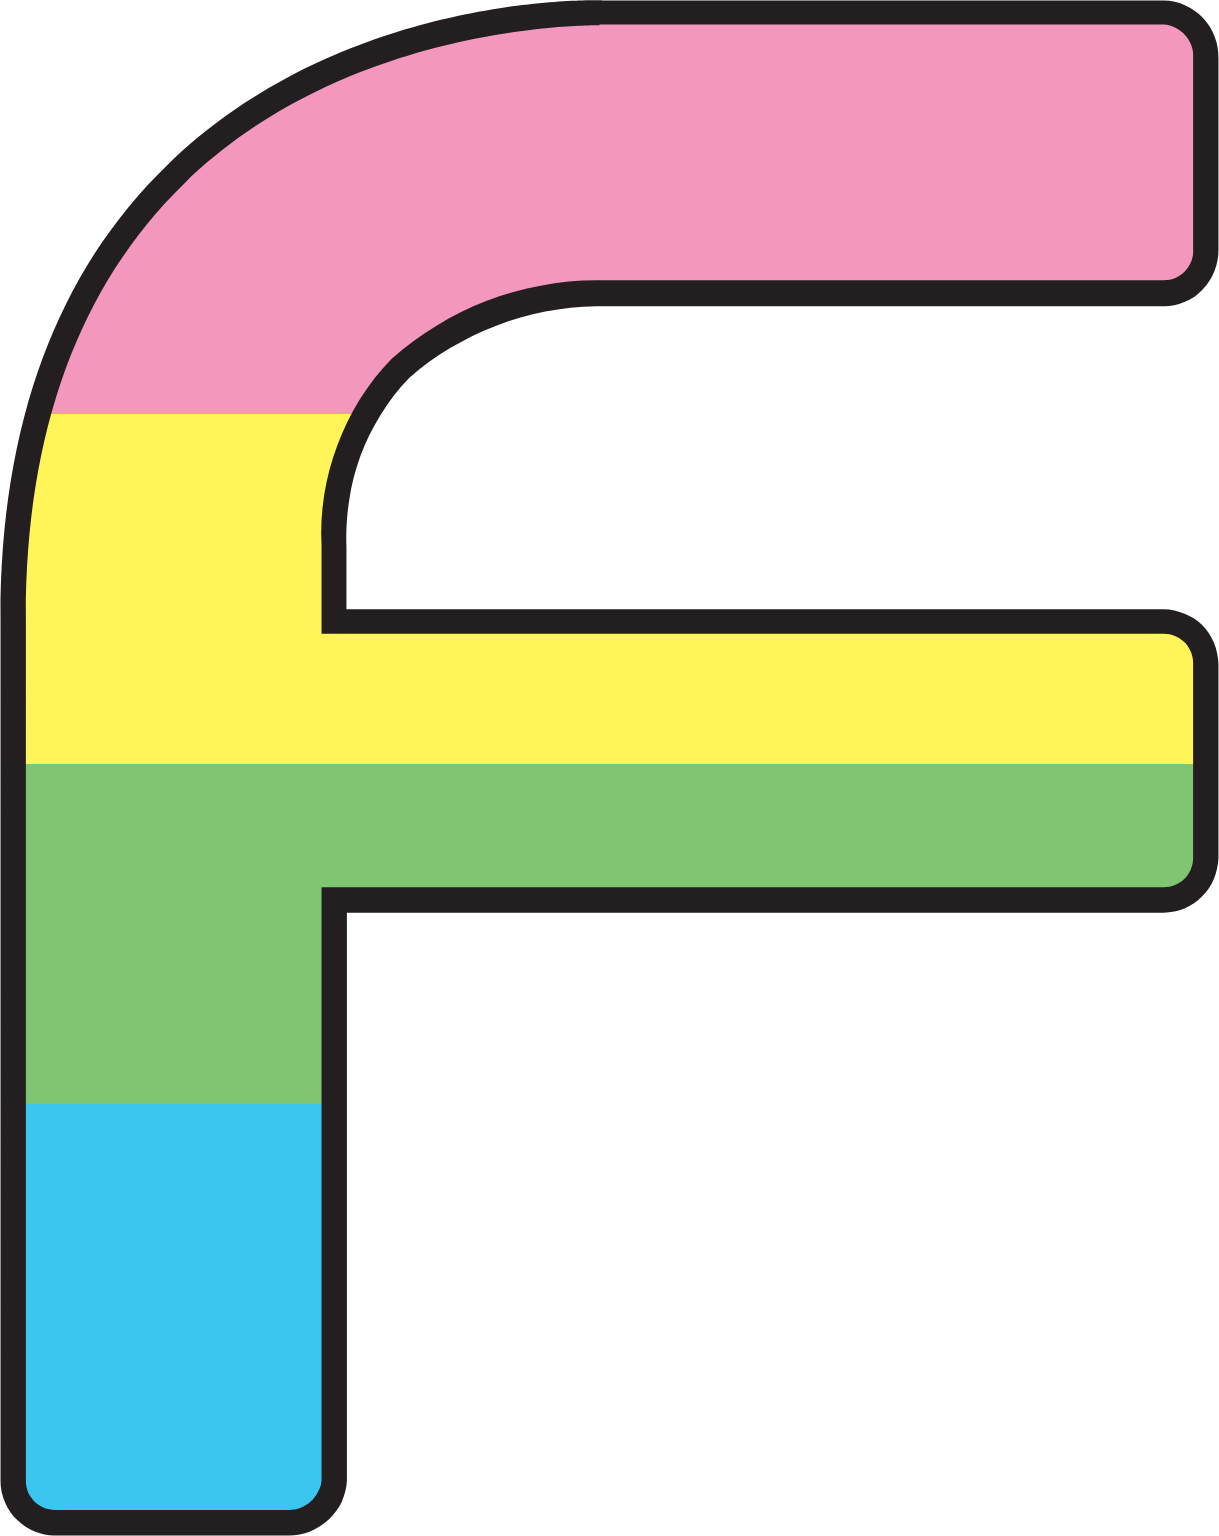 Nihon Falcom logo (transparent PNG)